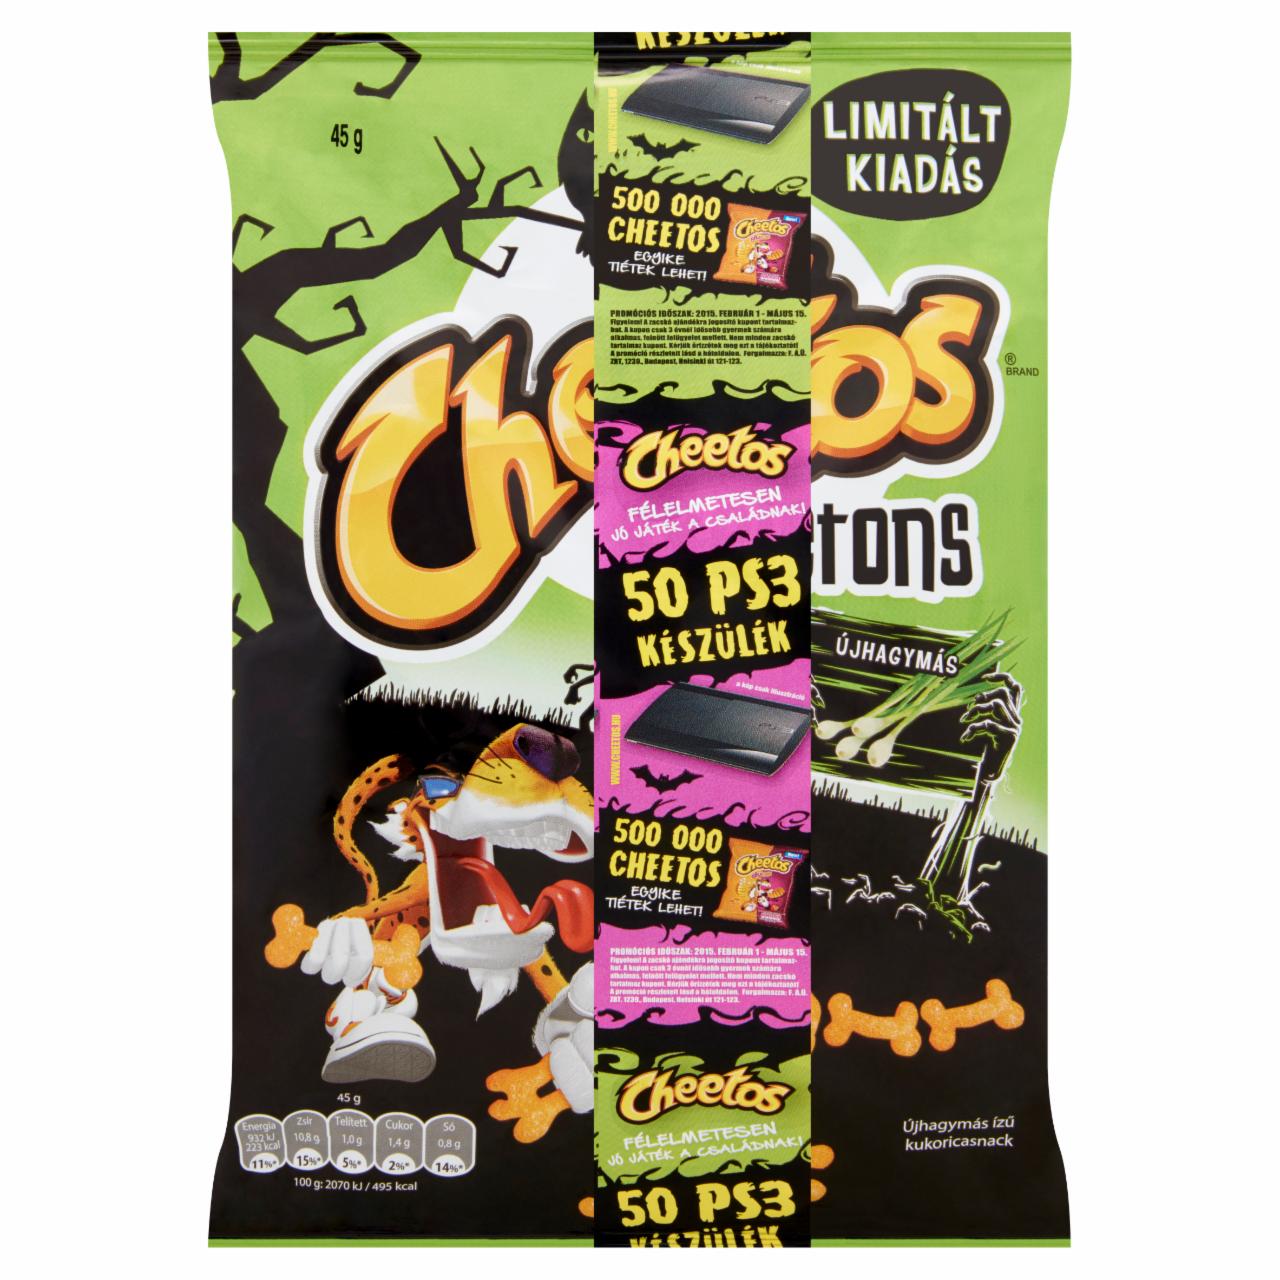 Képek - Cheetos Skeletons újhagymás ízű kukoricasnack 45 g